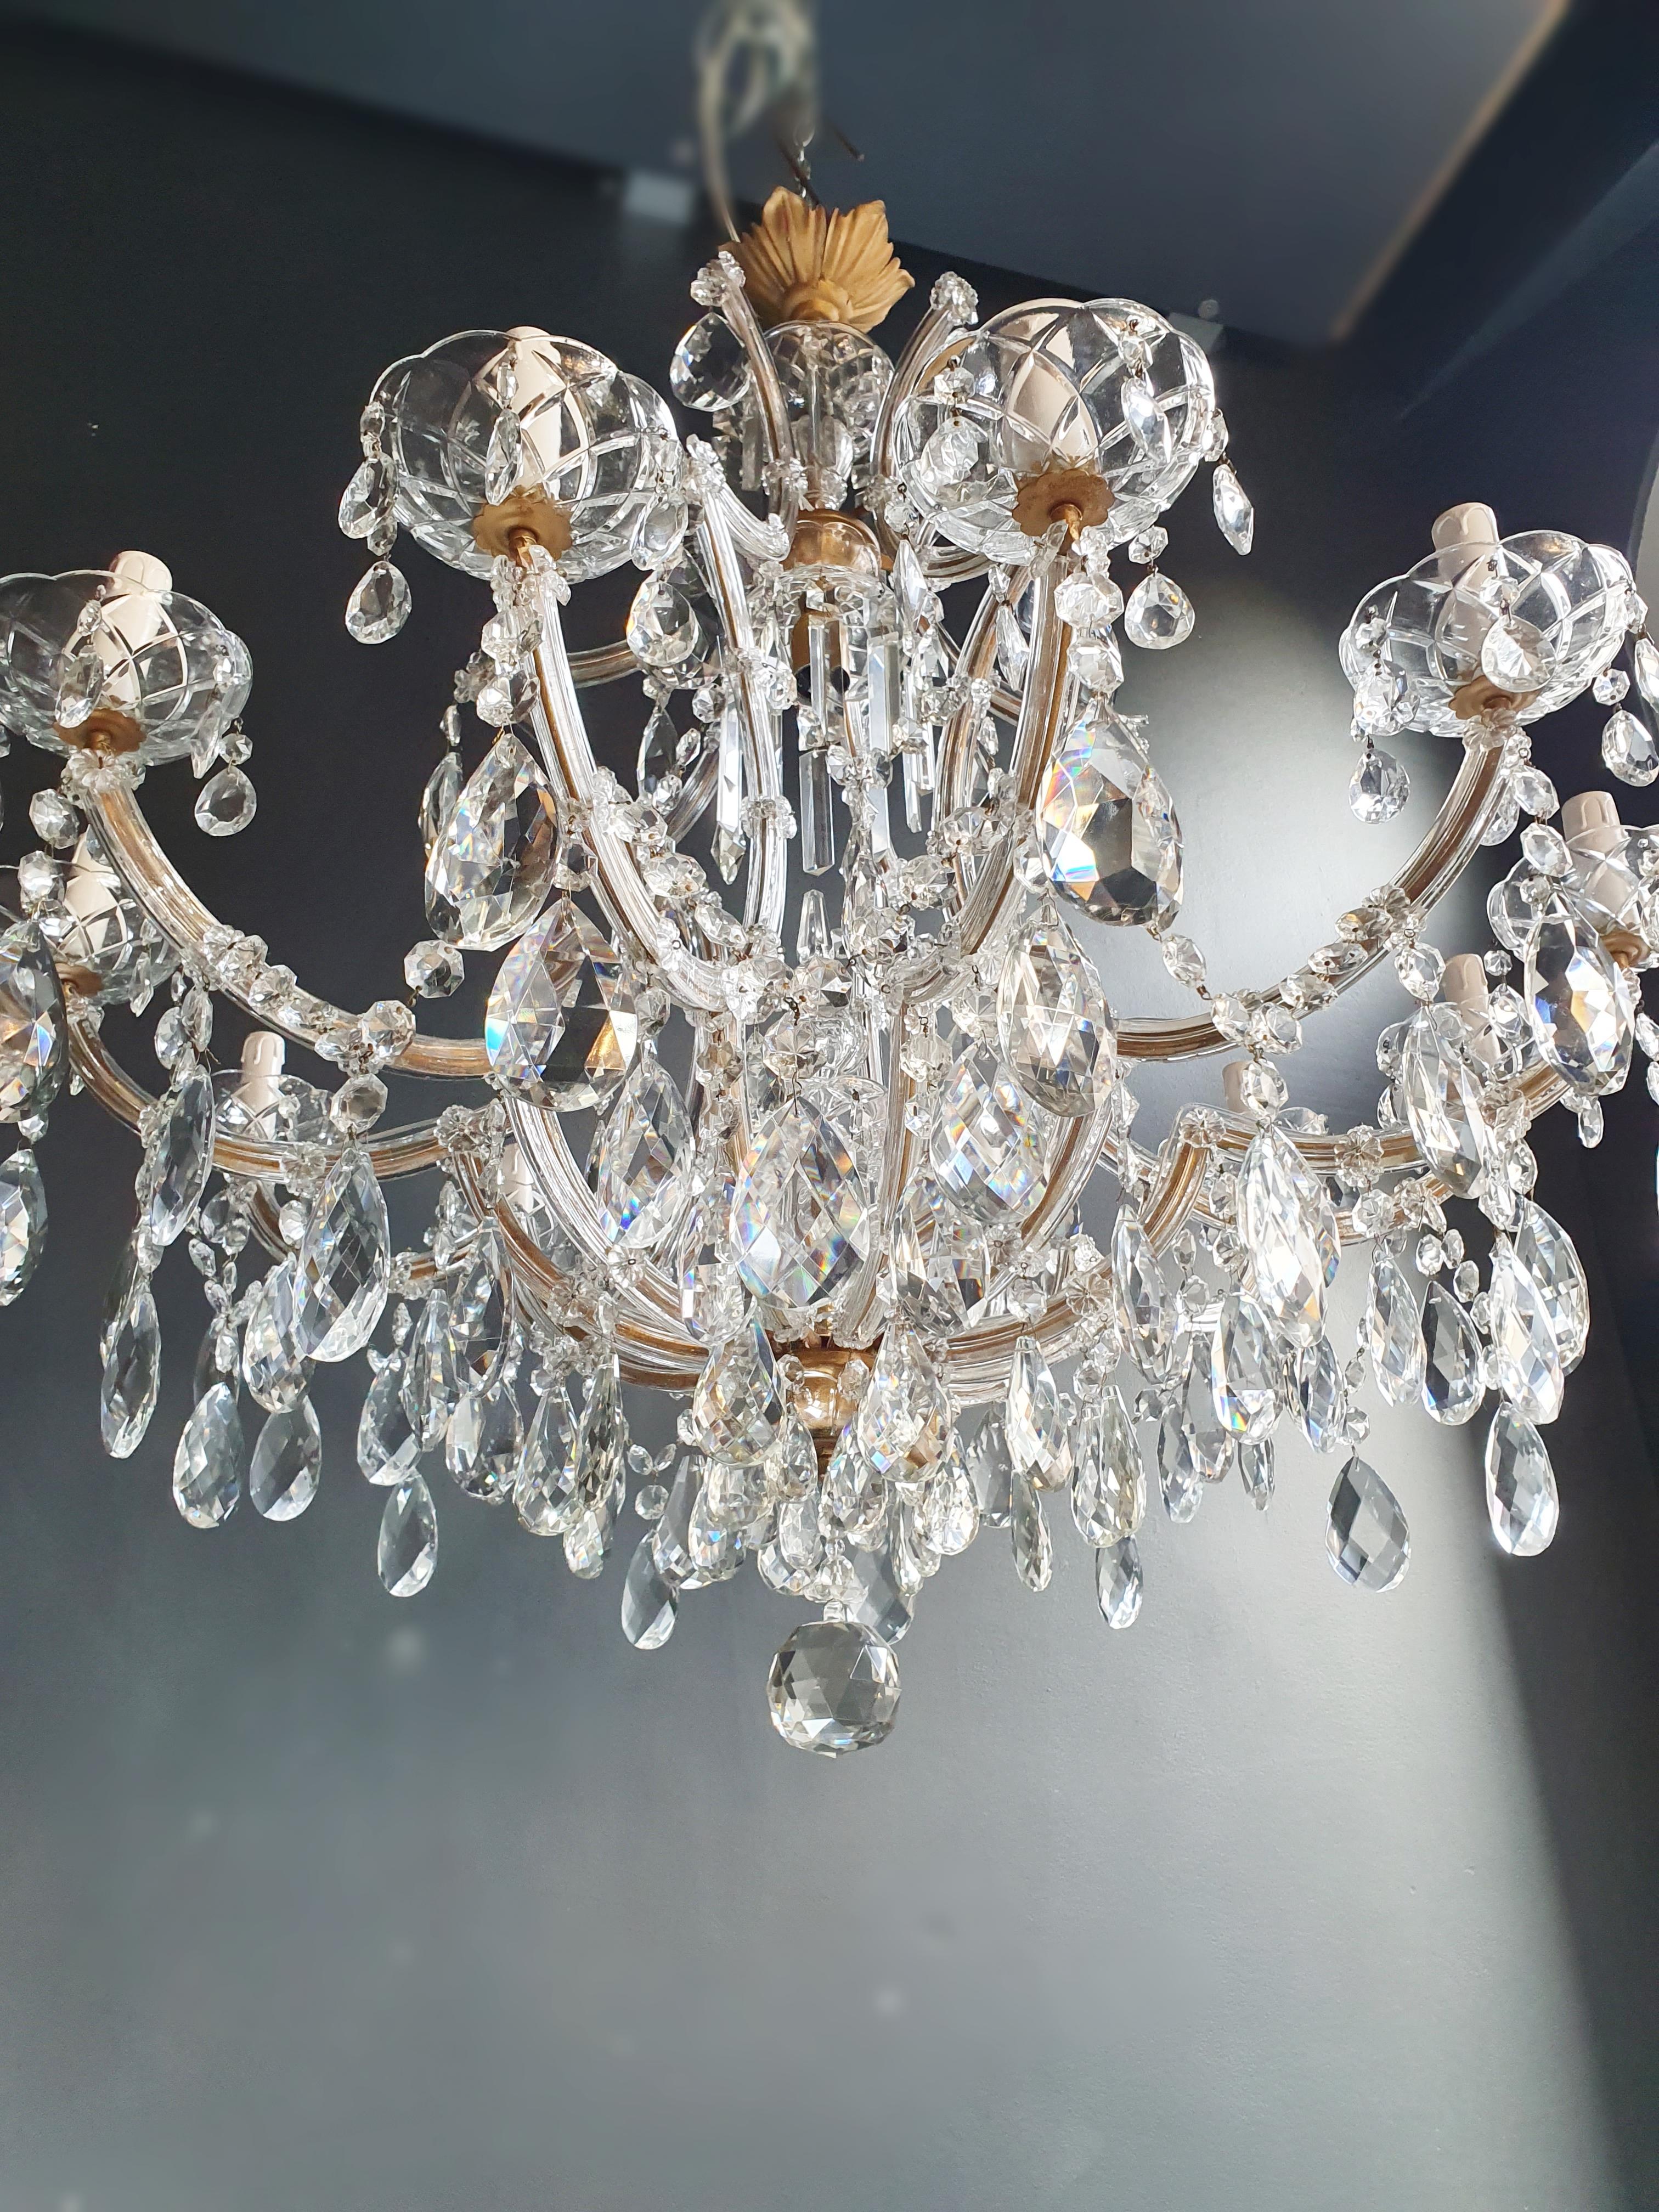 Maria Theresa Crystal Chandelier Antique Ceiling Lamp Lustre Art Nouveau 2